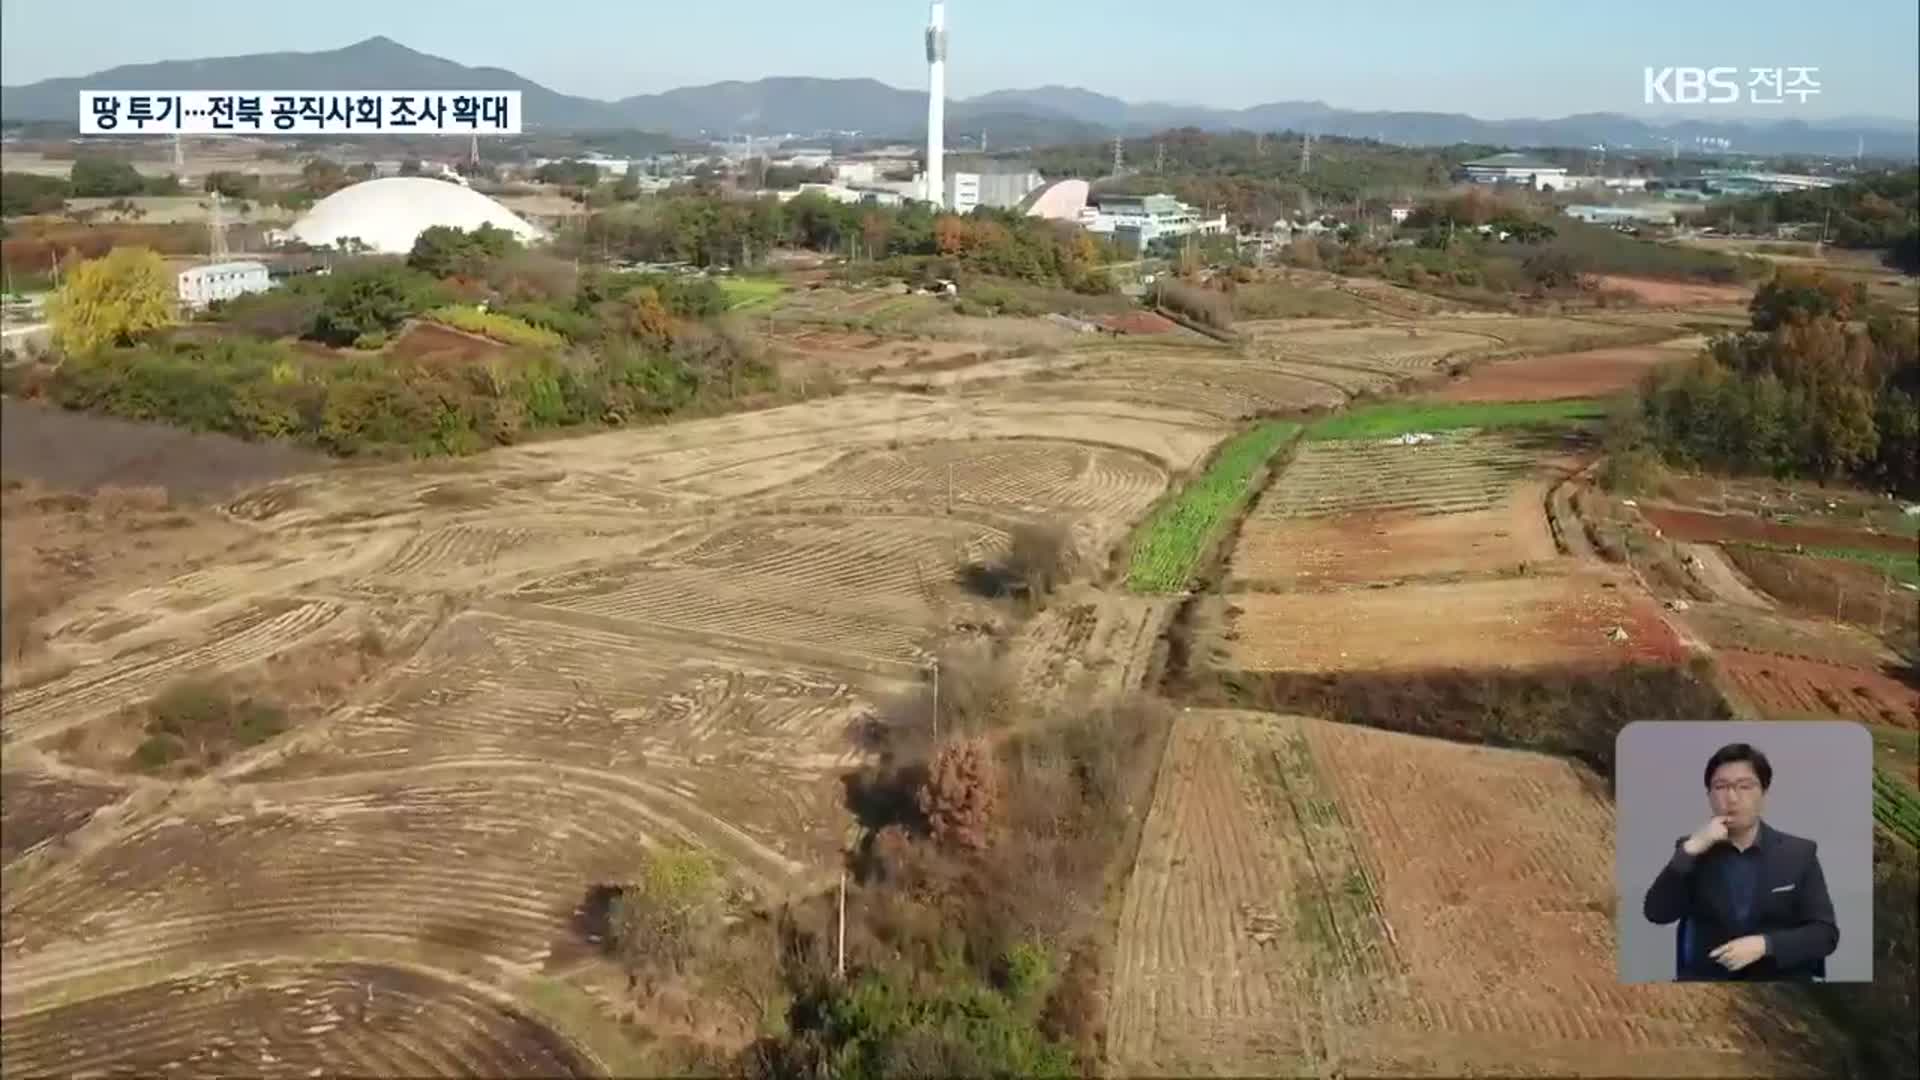 LH발 땅 투기 의혹…전북 공무원·가족 대상 조사 확대